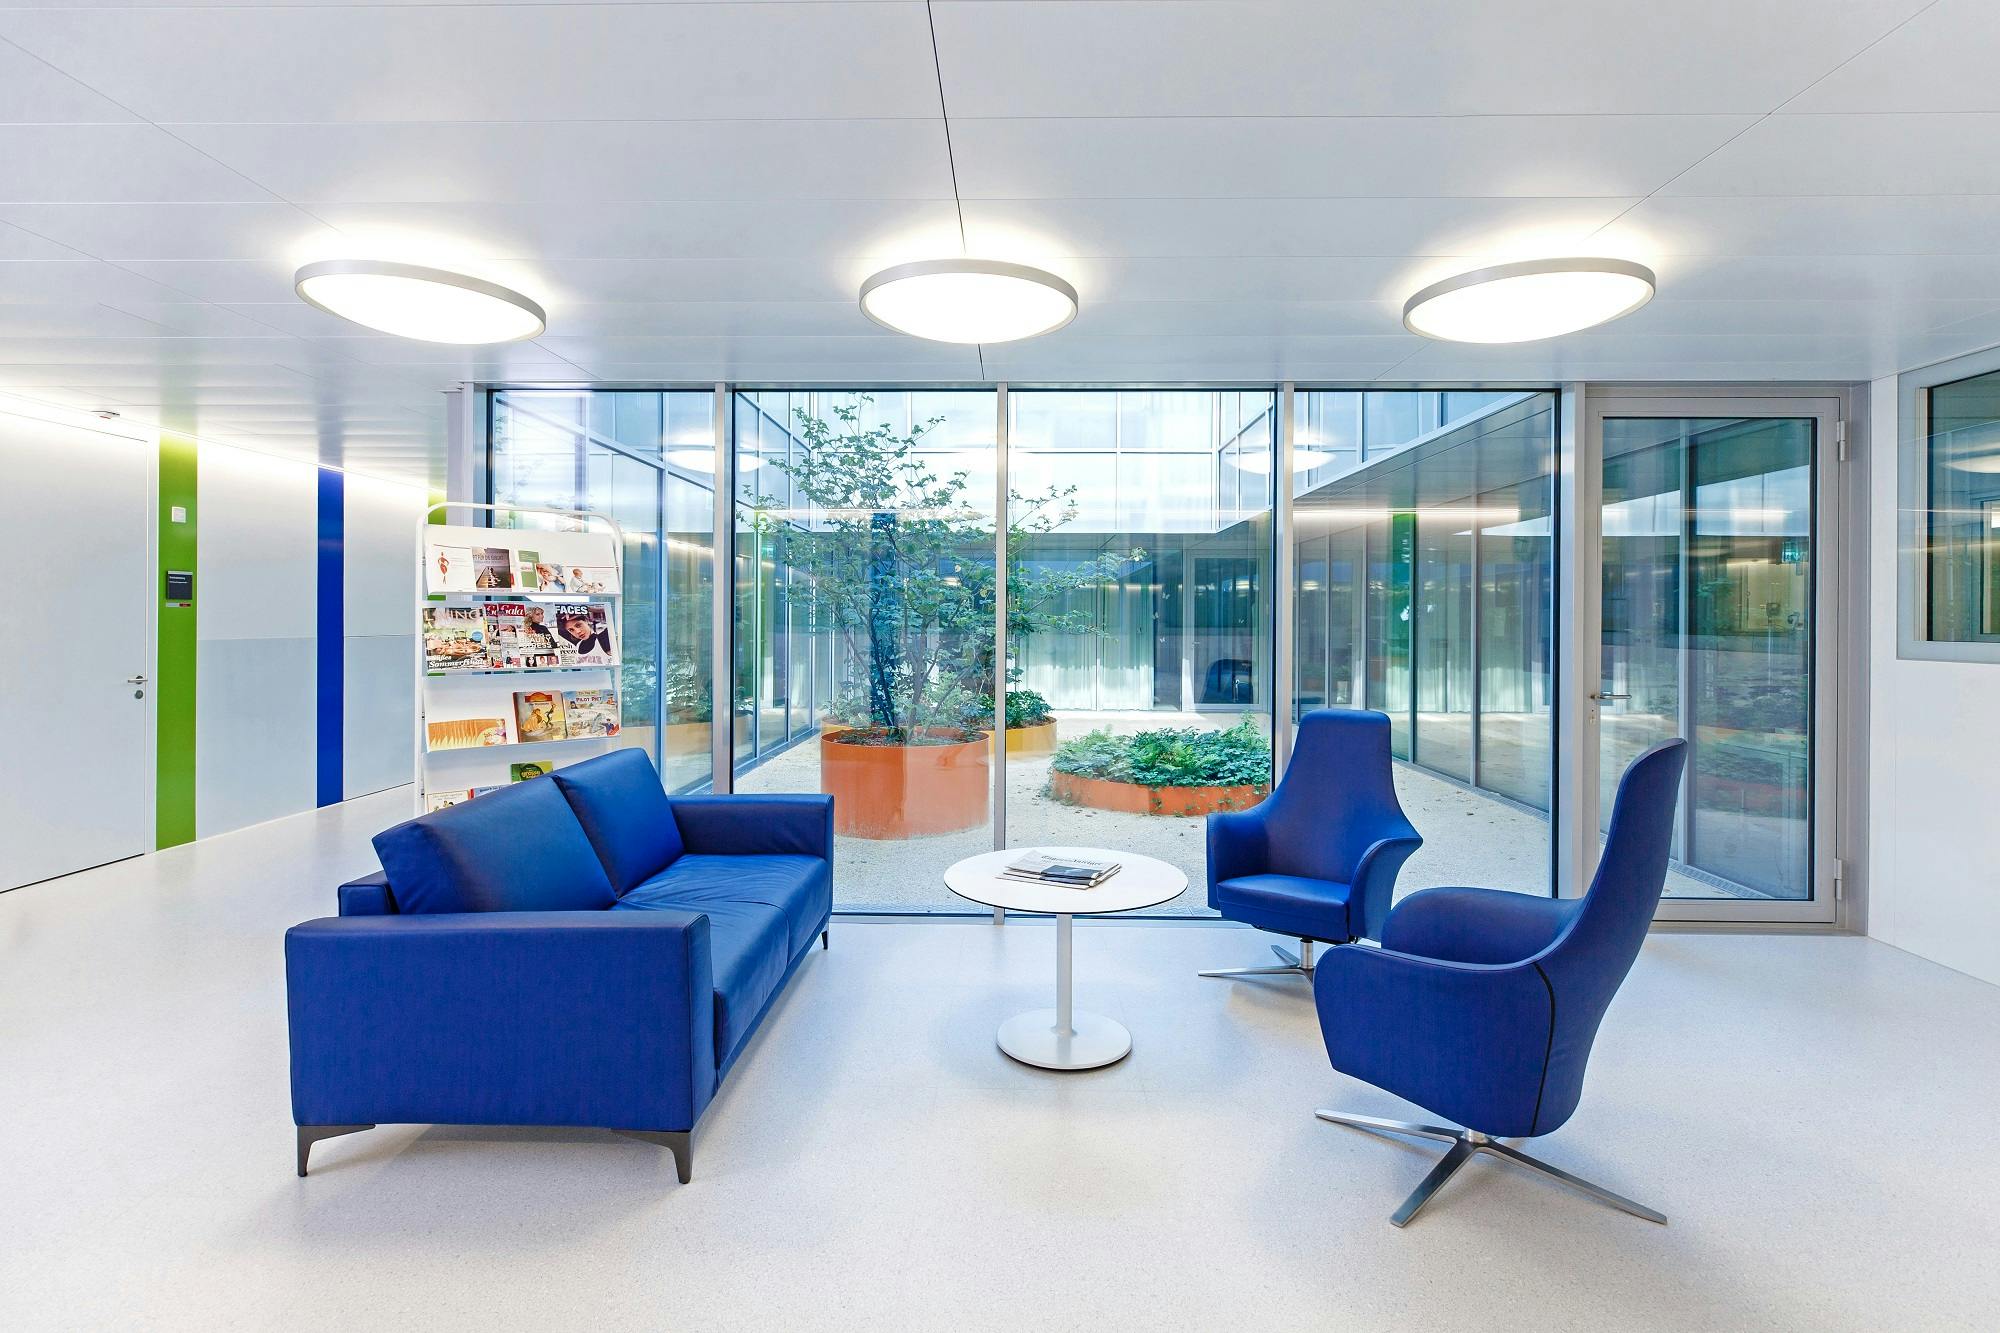 Moderner Wartebereich mit blauen Sofas, Zeitschriftenständer und Blick auf einen Innenhof.